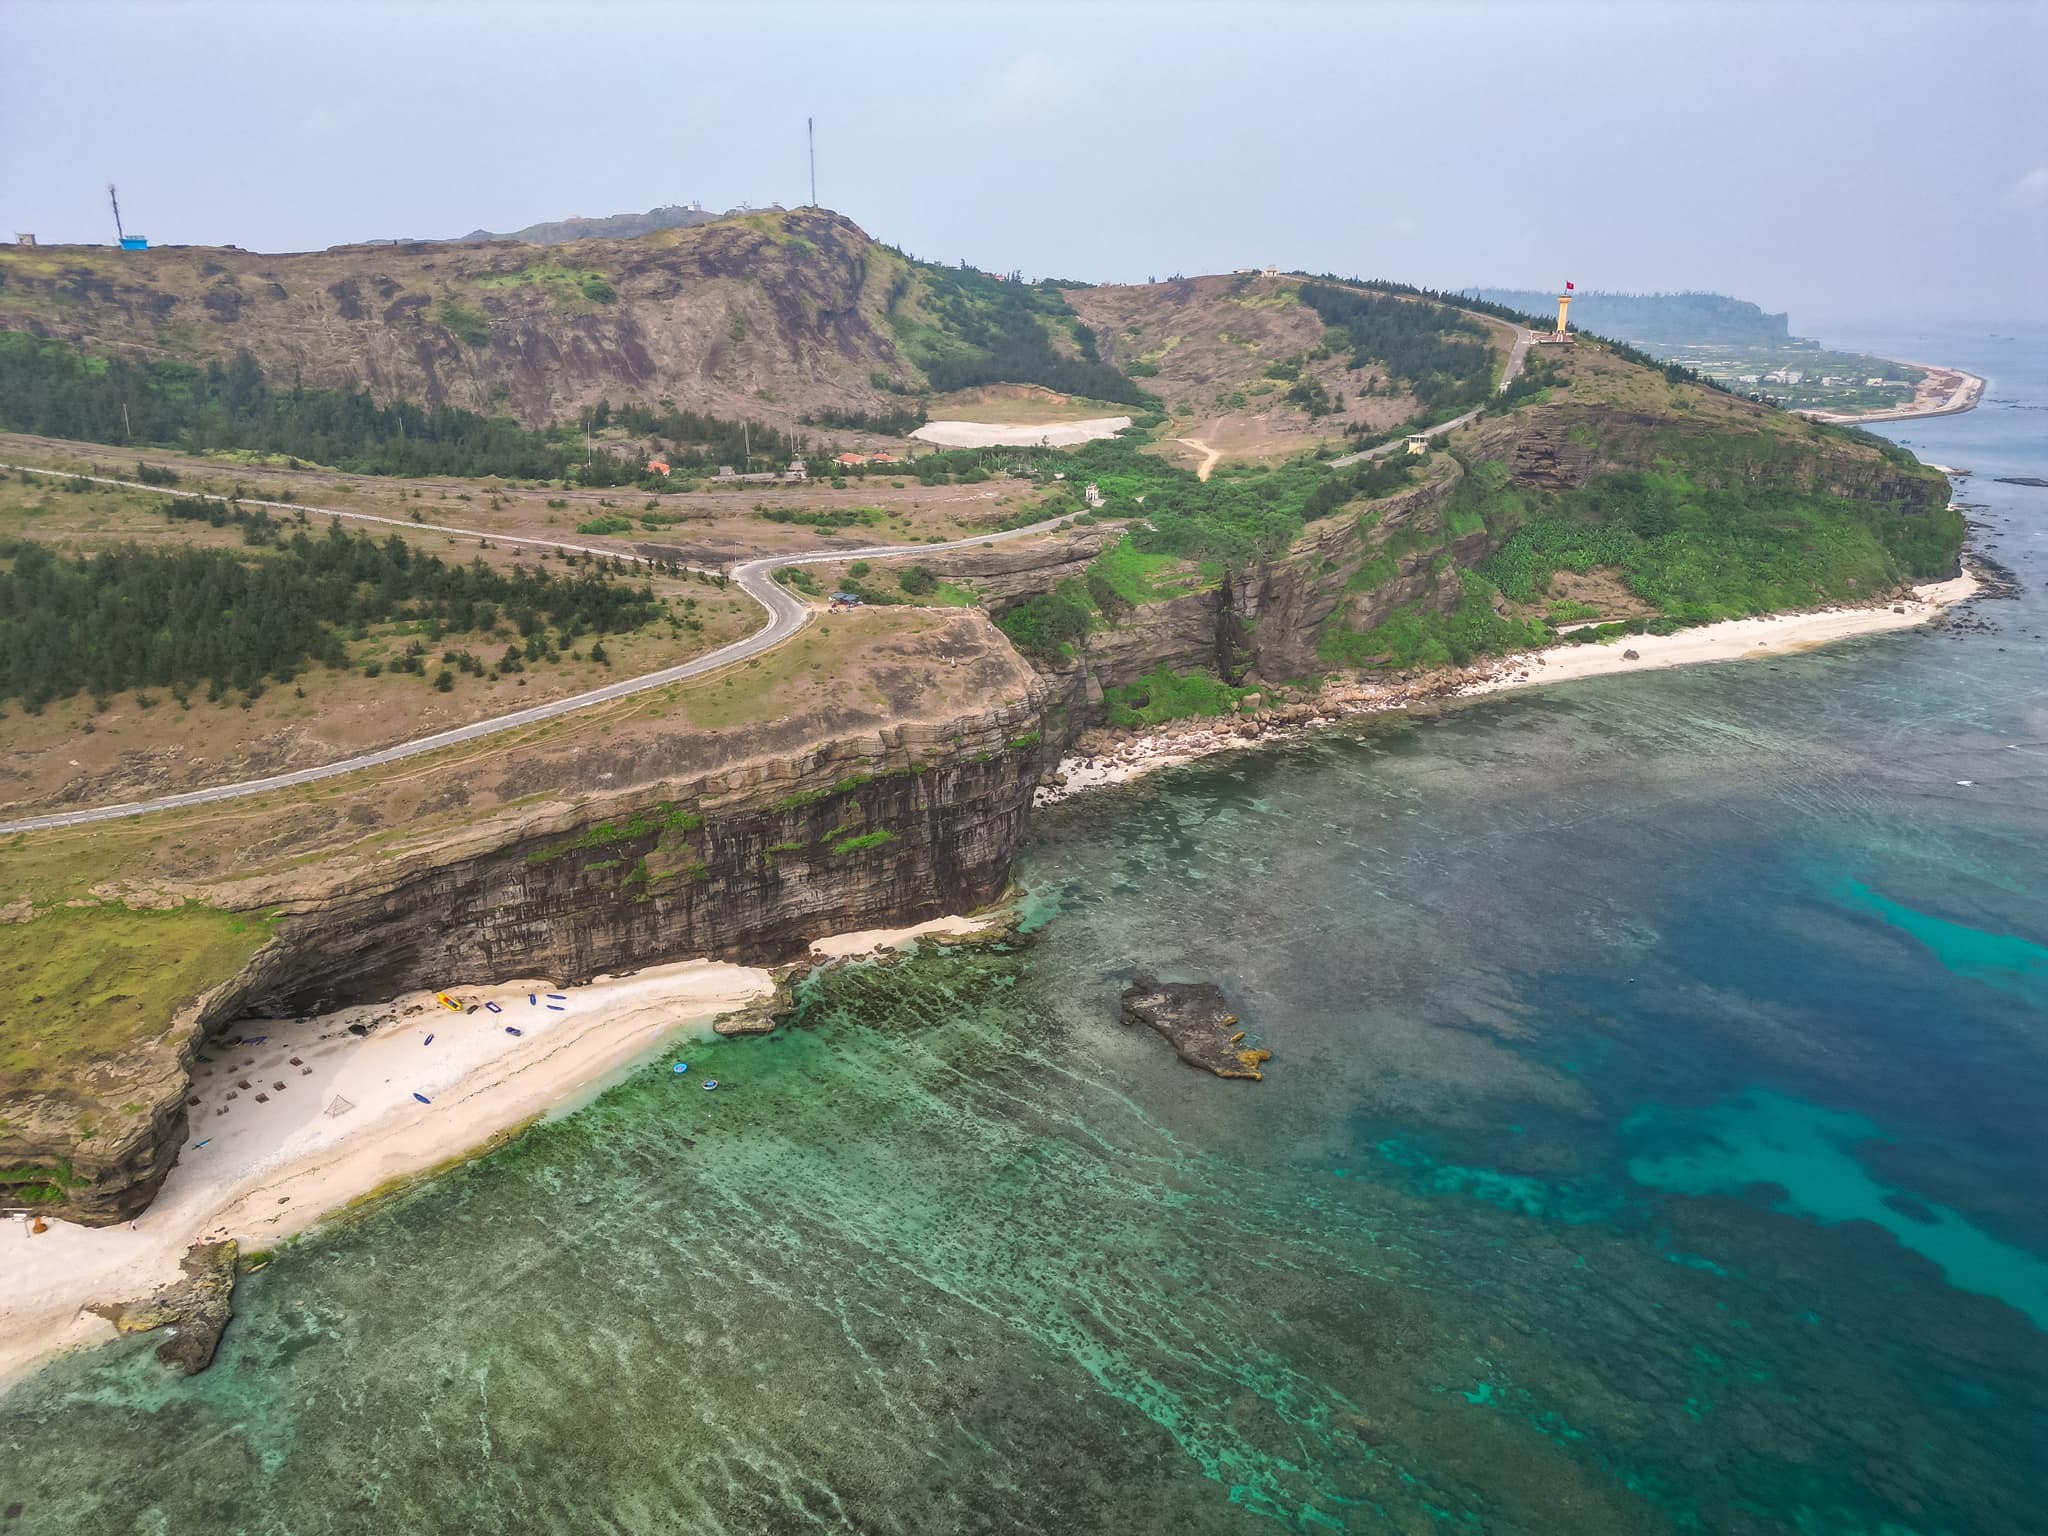 Hành trình khám phá núi lửa kỳ vĩ và hoang sơ trên đảo Lý Sơn - 1